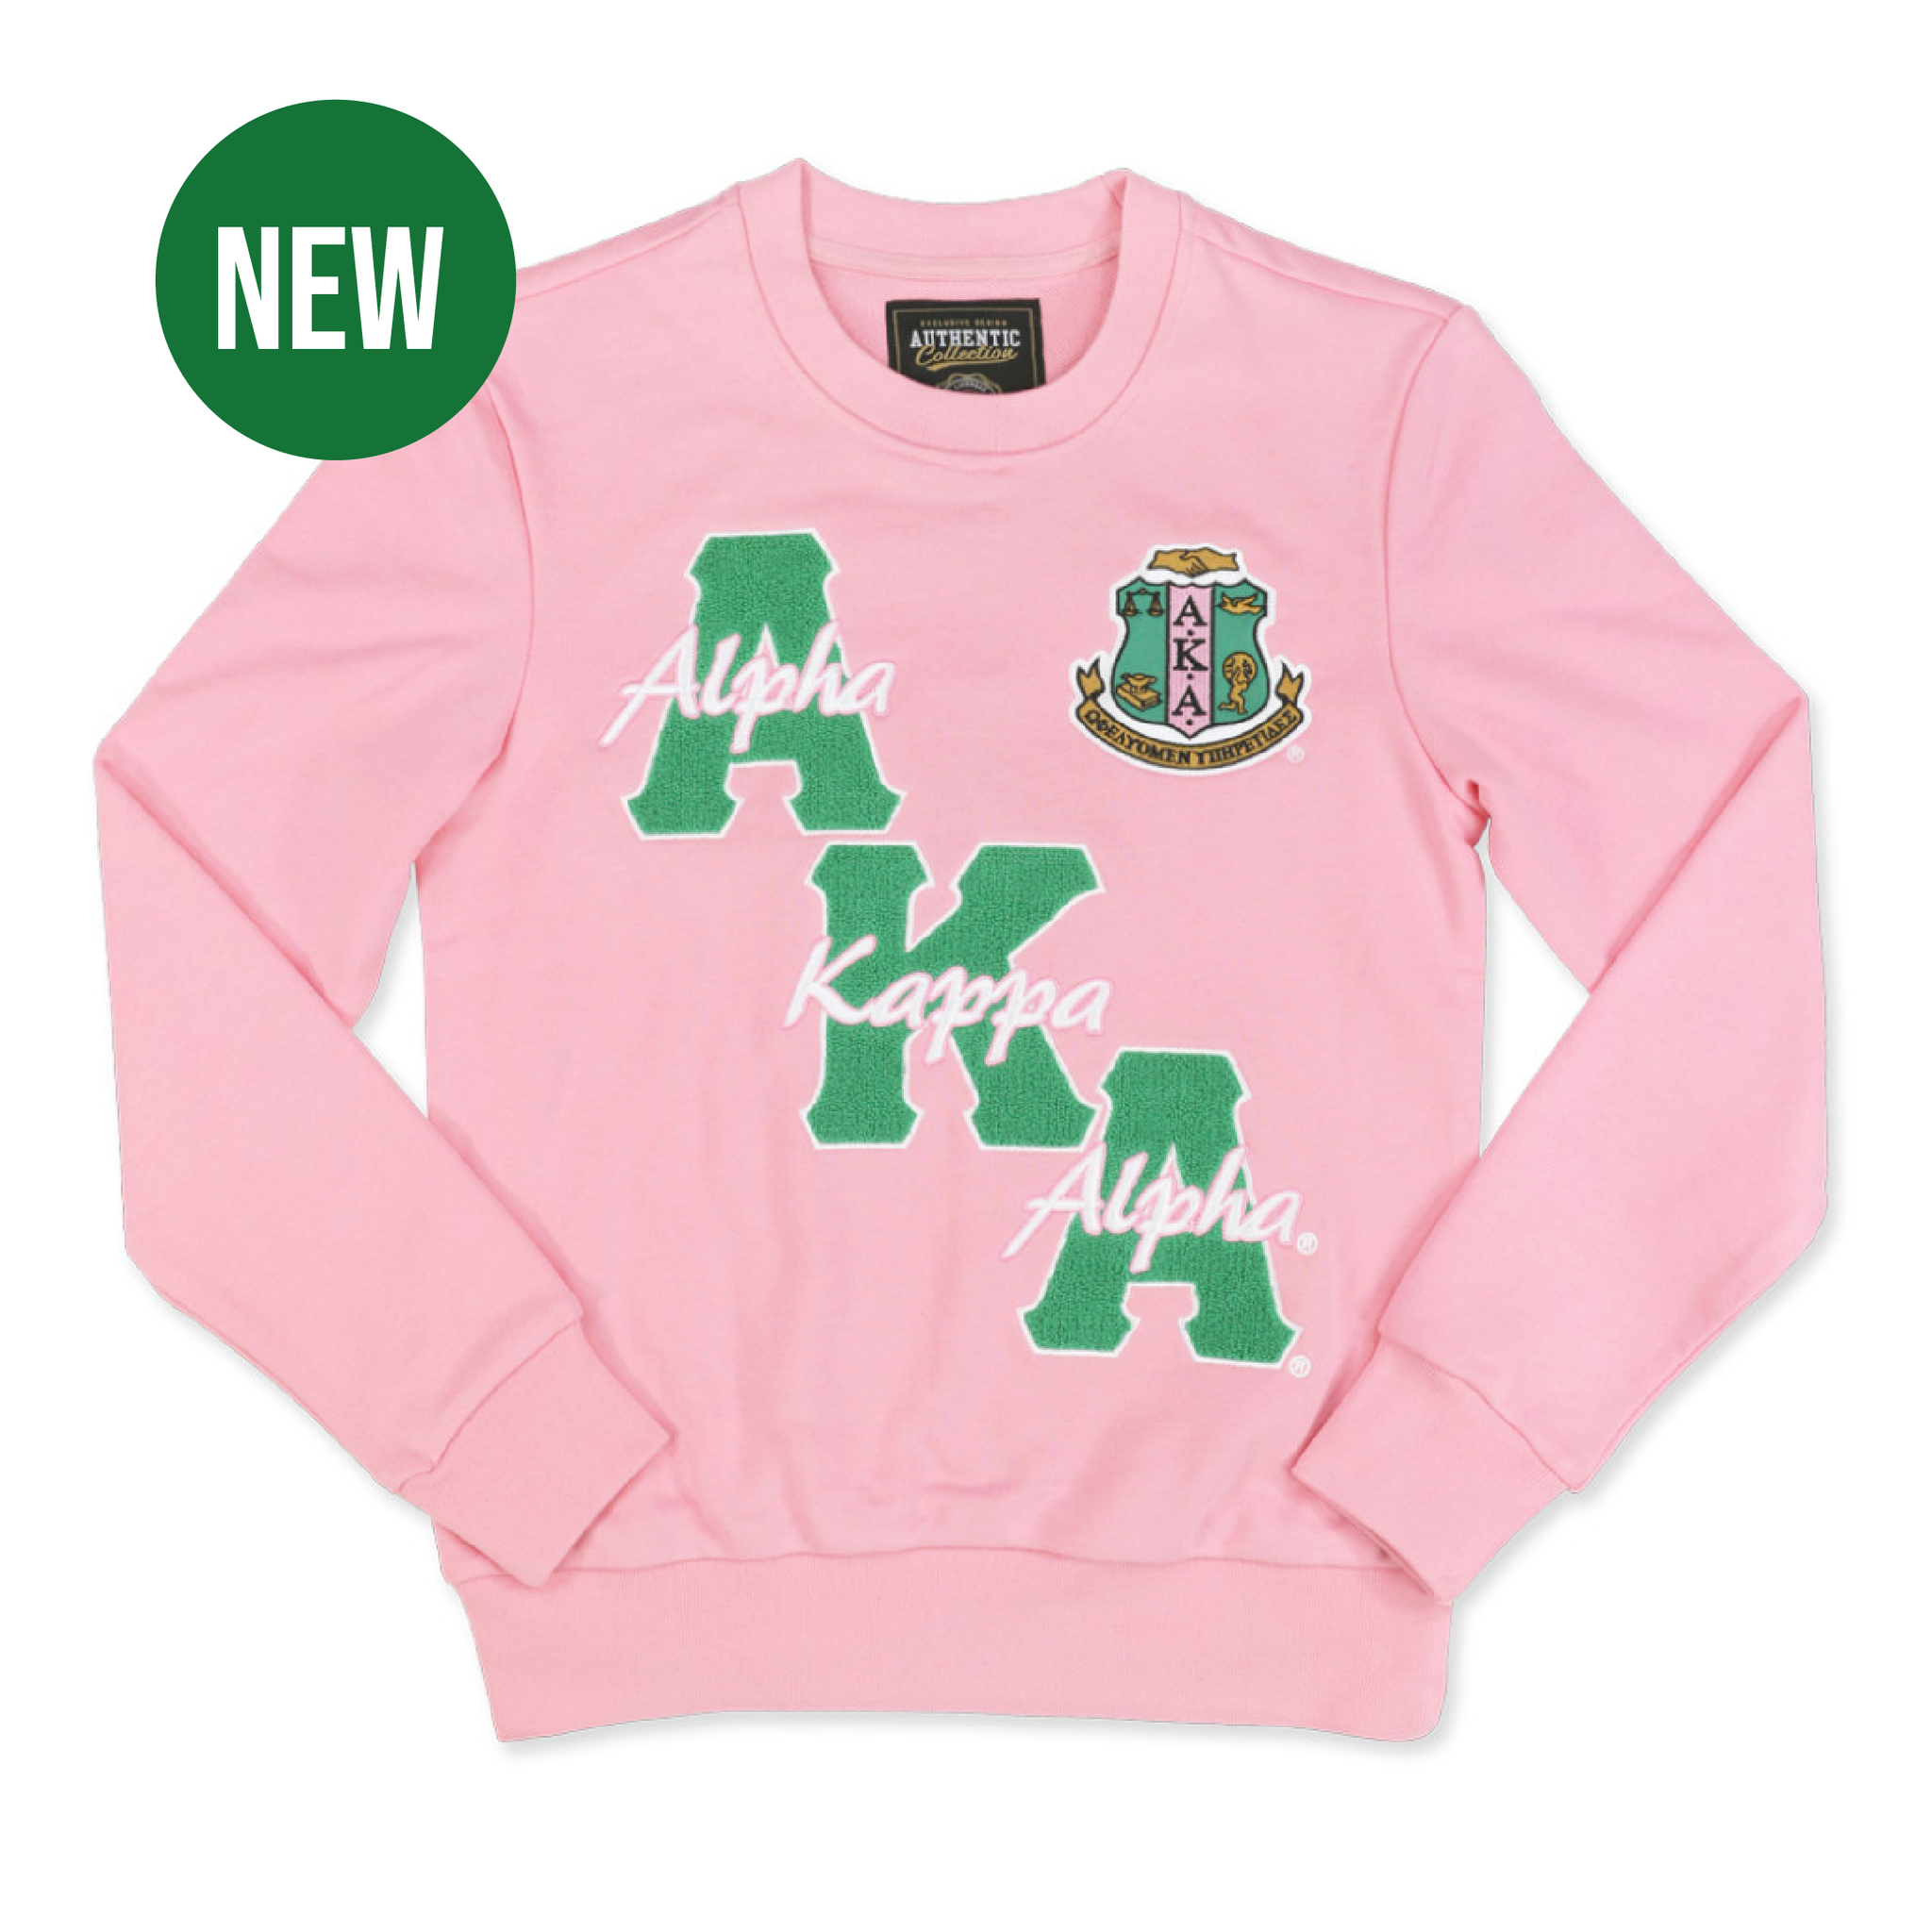 NEW! Pink AKA Sweatshirt with Chanel Embroidery